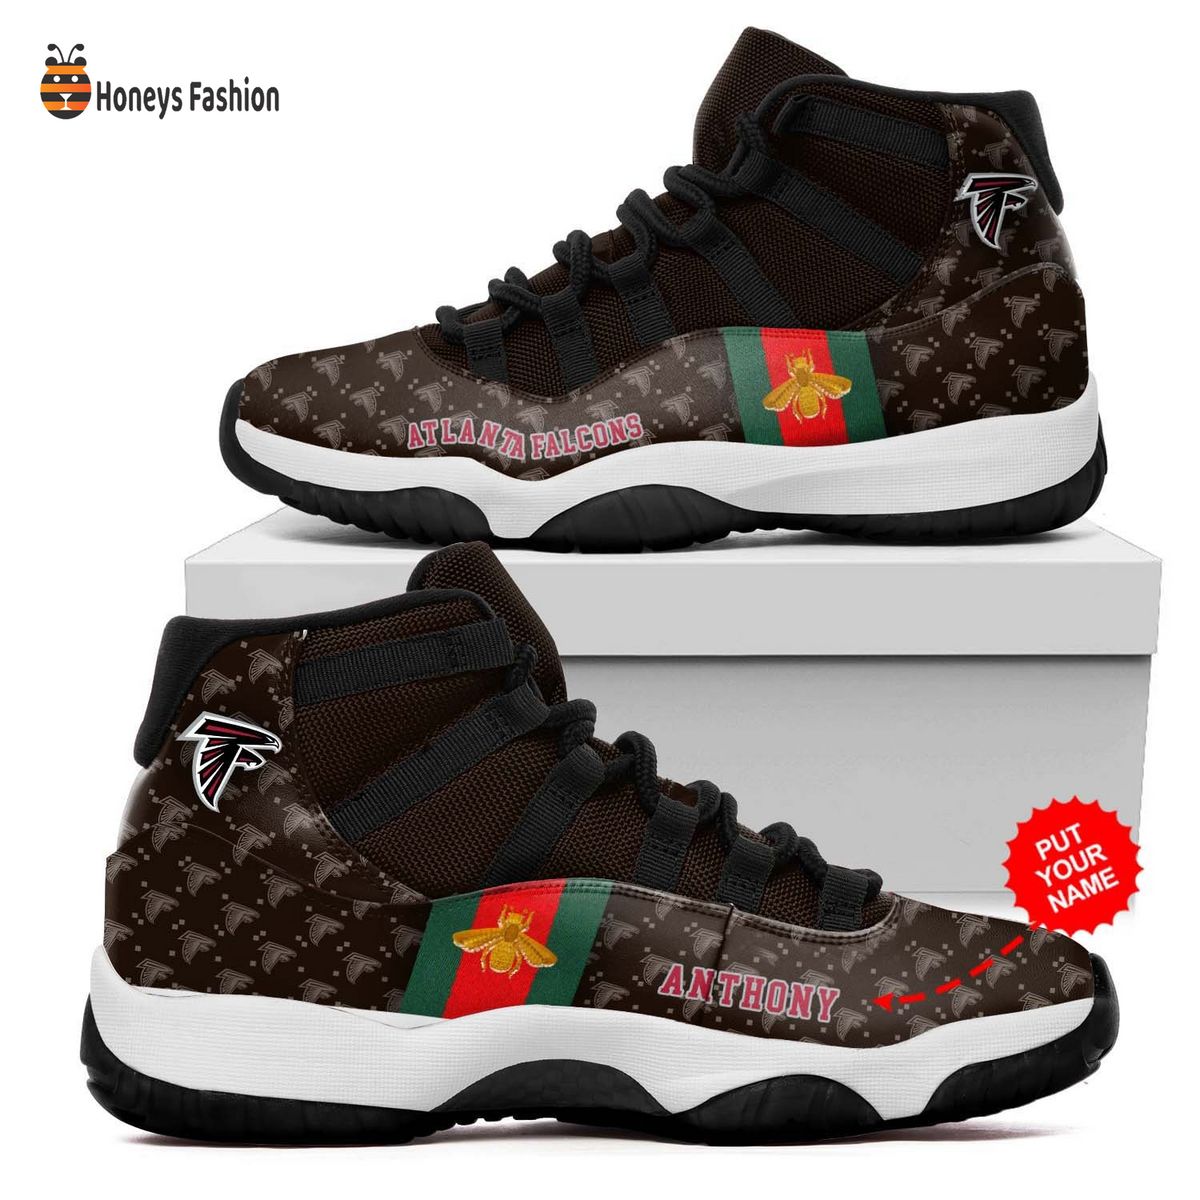 Atlanta Falcons NFL Gucci Air Jordan 11 Shoes